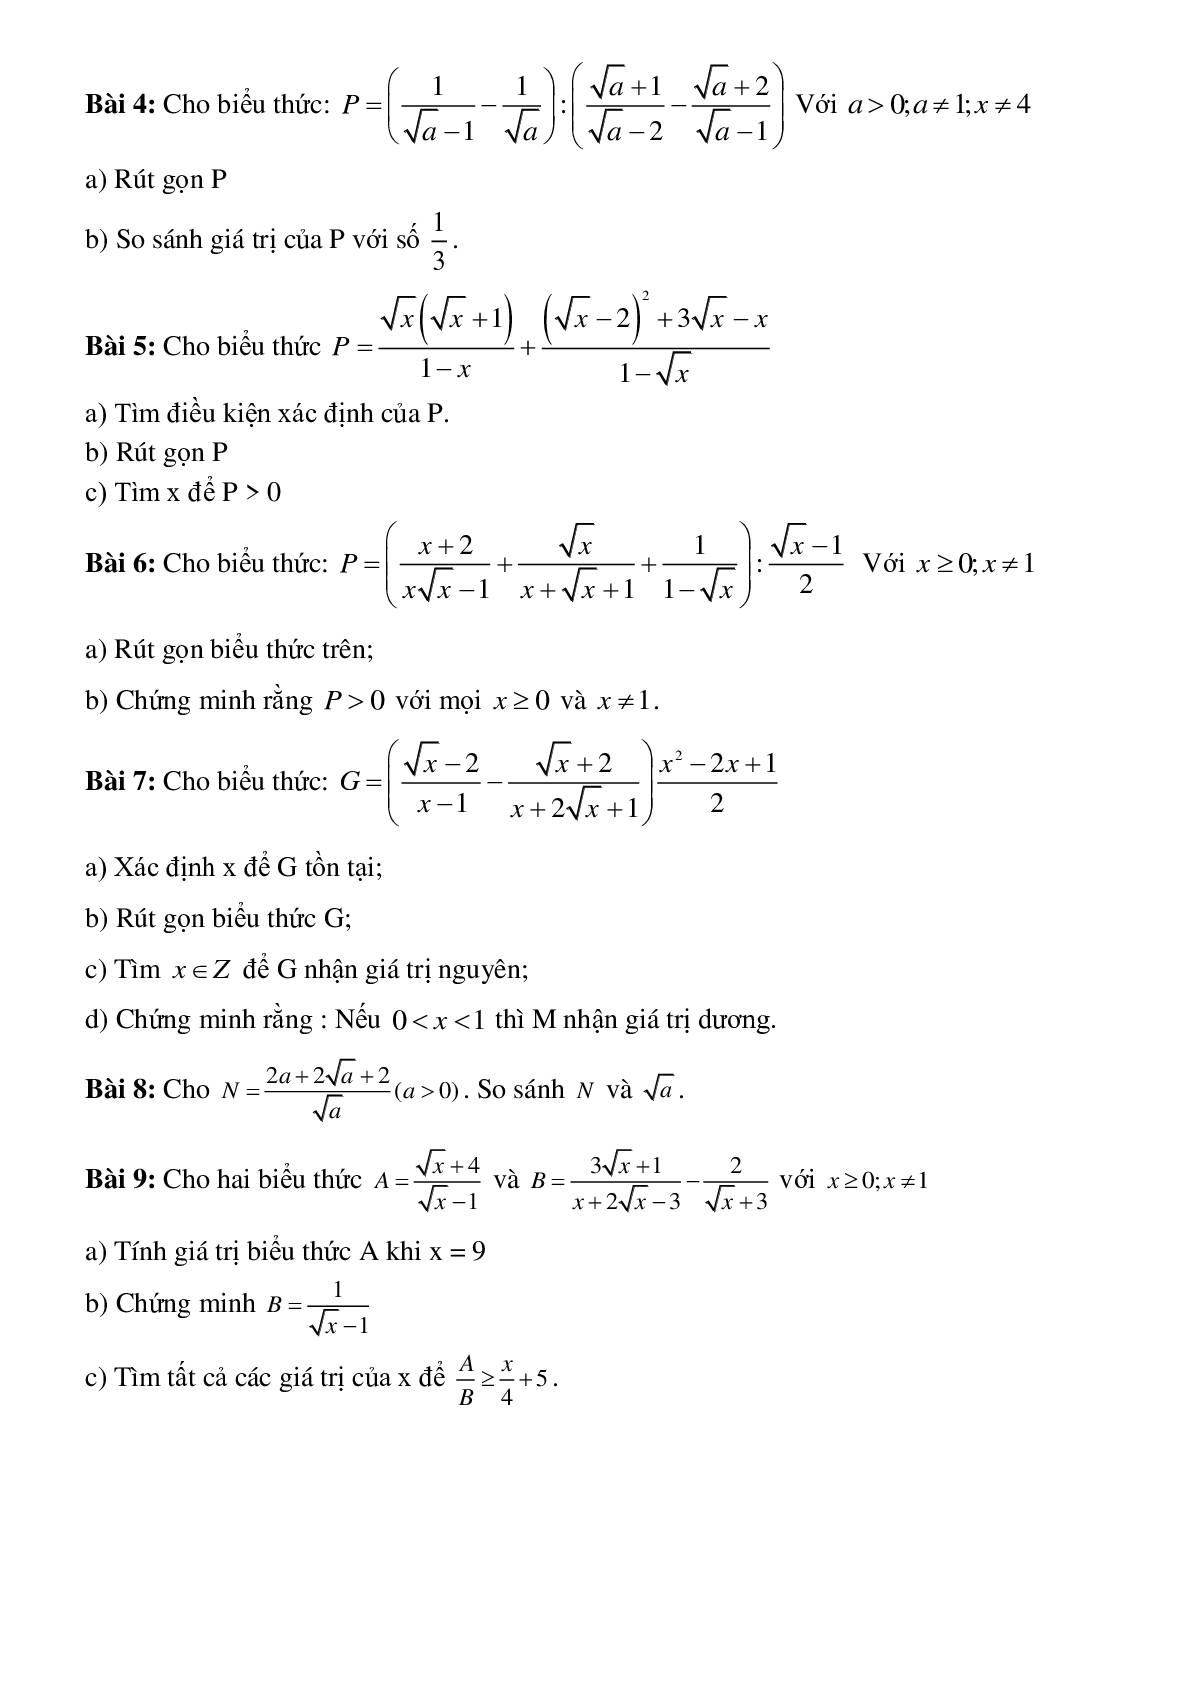 Phương pháp giải So sánh biểu thức chứa căn với một số hoặc với một biểu thức khác (trang 7)